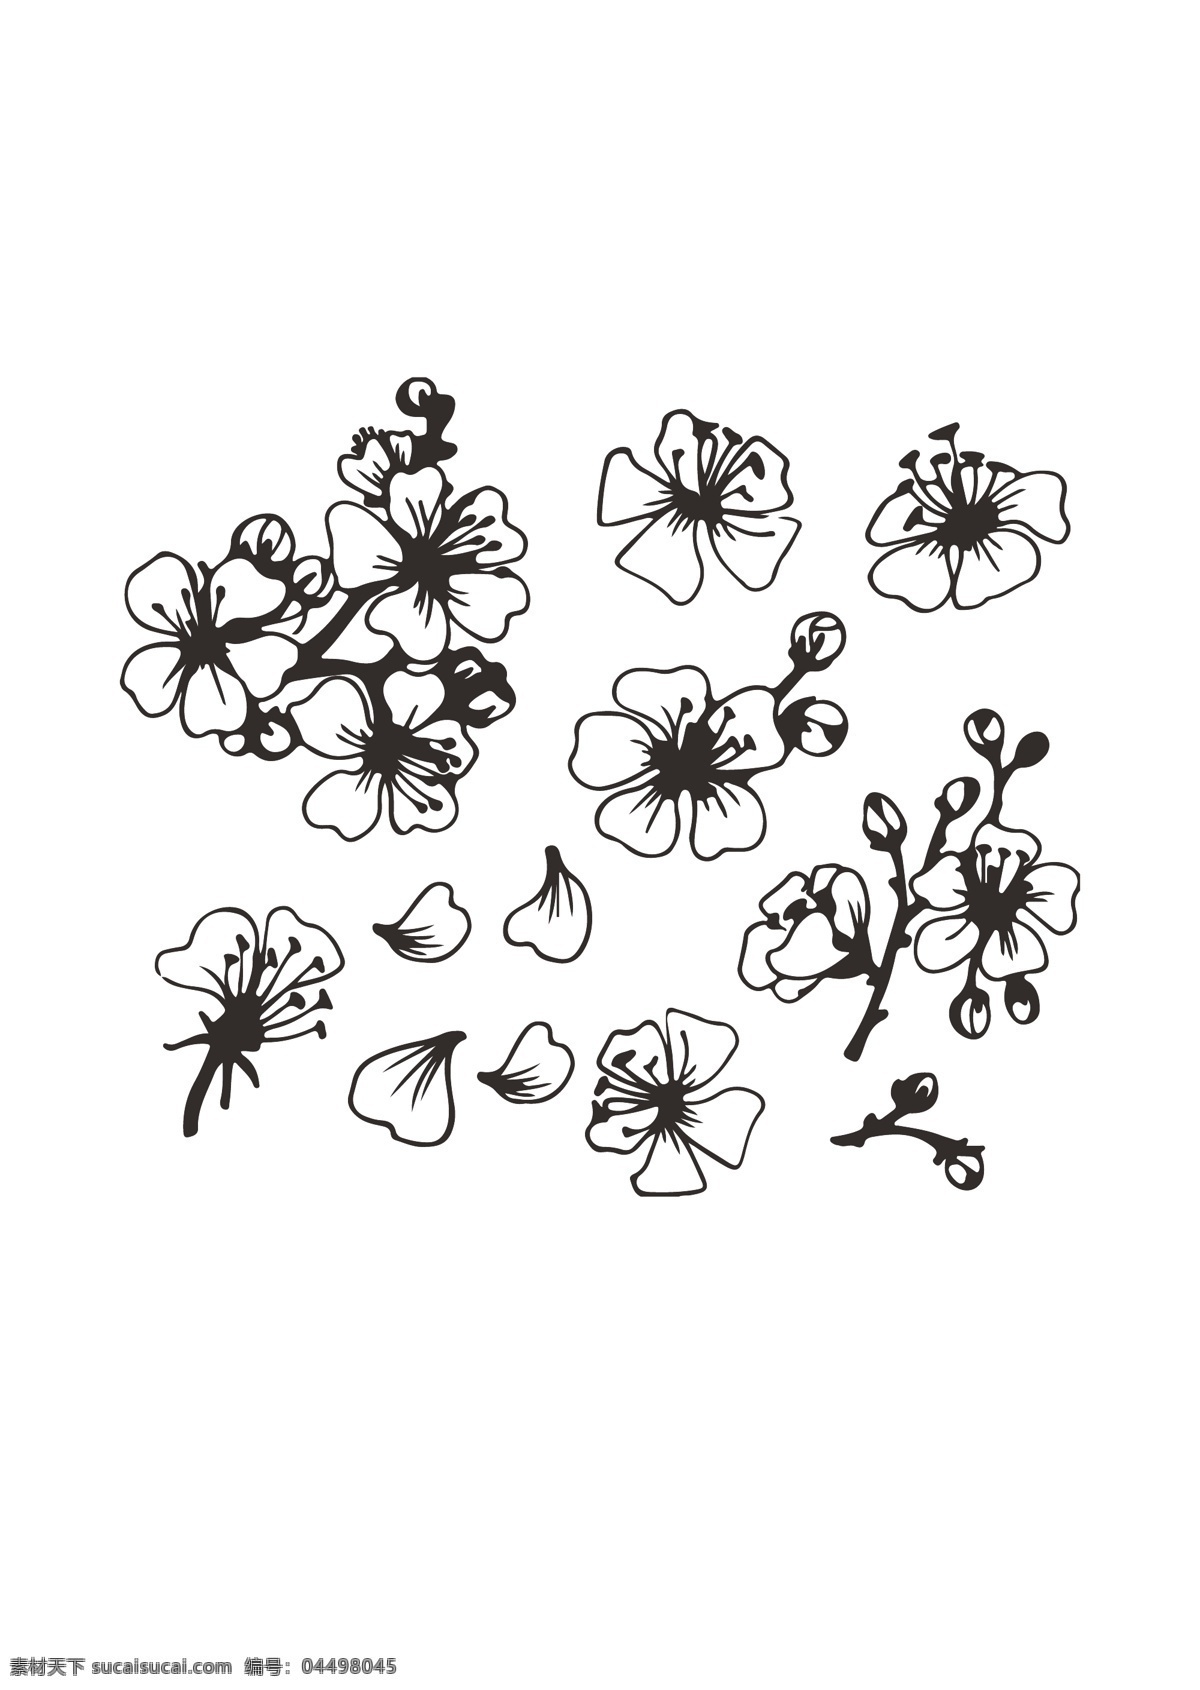 梅花 矢量素材图片 矢量 线稿 黑白 花瓣 底纹边框 背景底纹